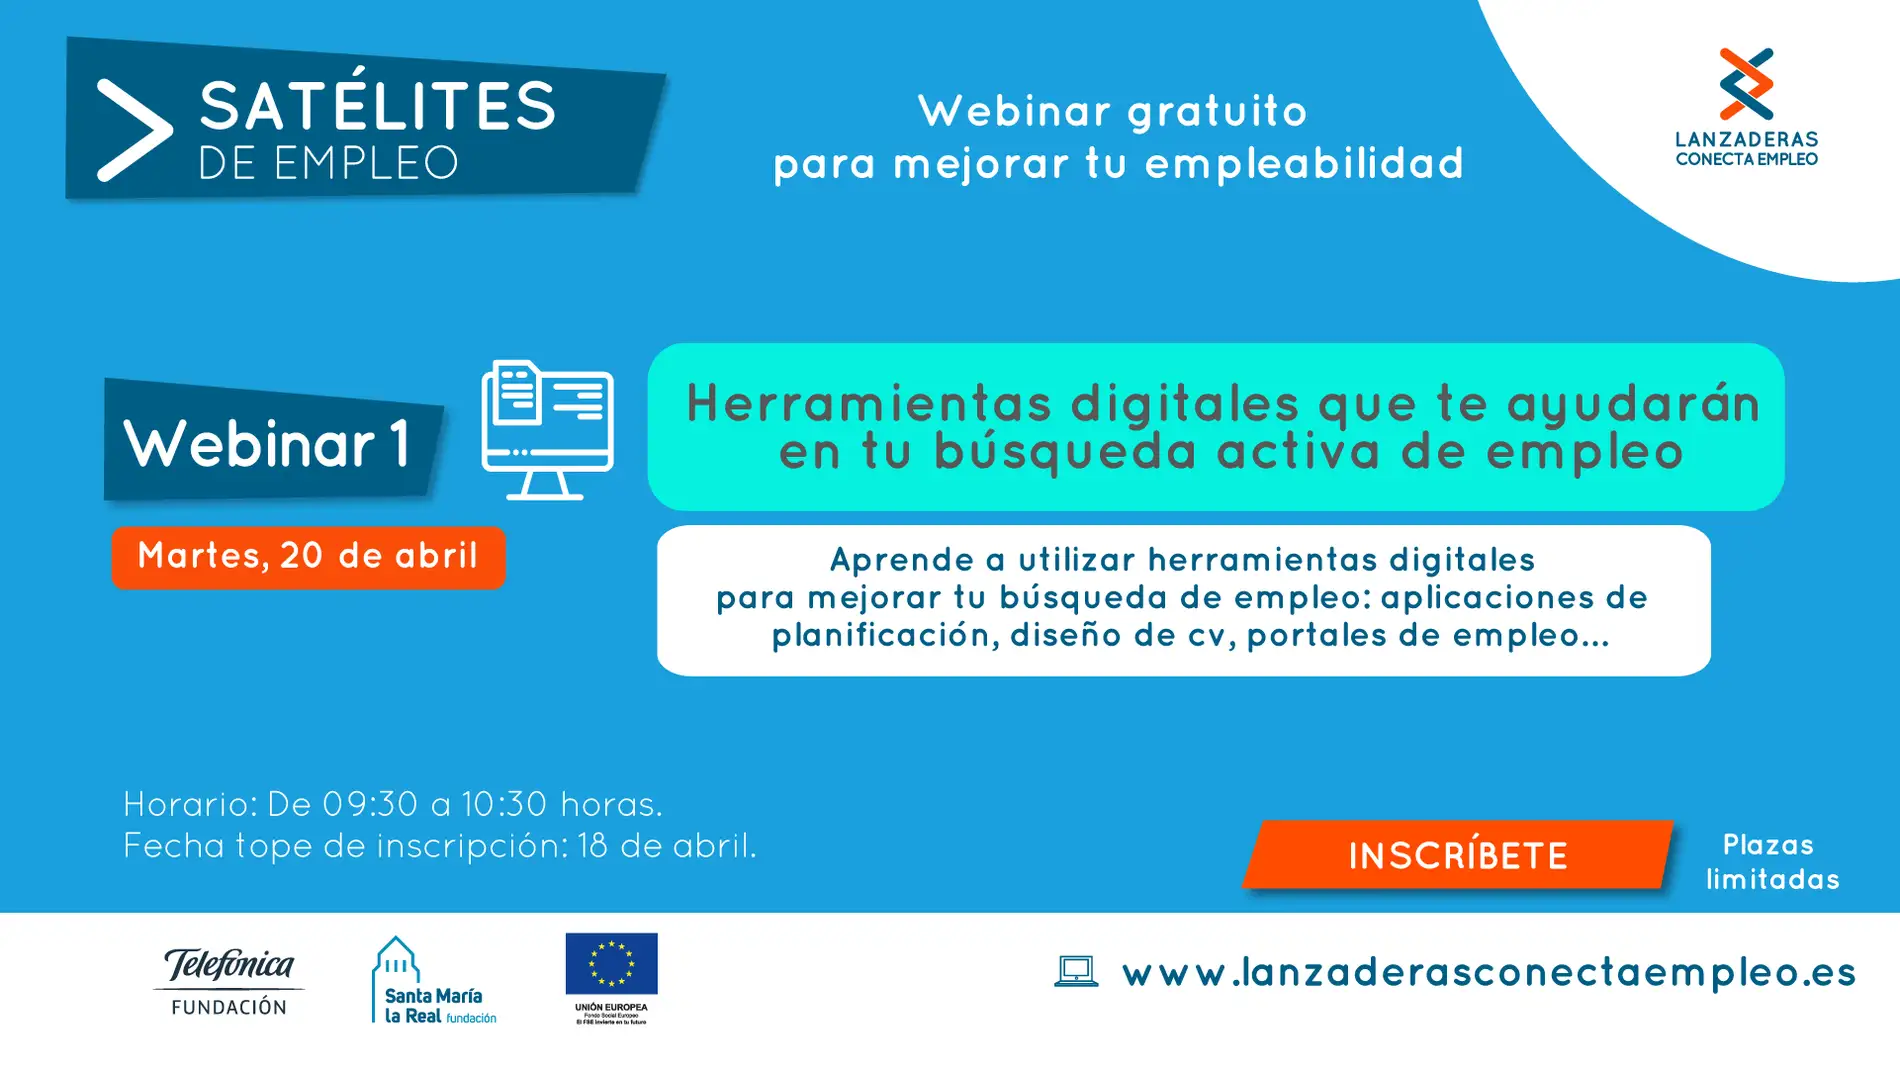 Nuevos webinars gratuitos ‘Satélites de Empleo’ para Talavera